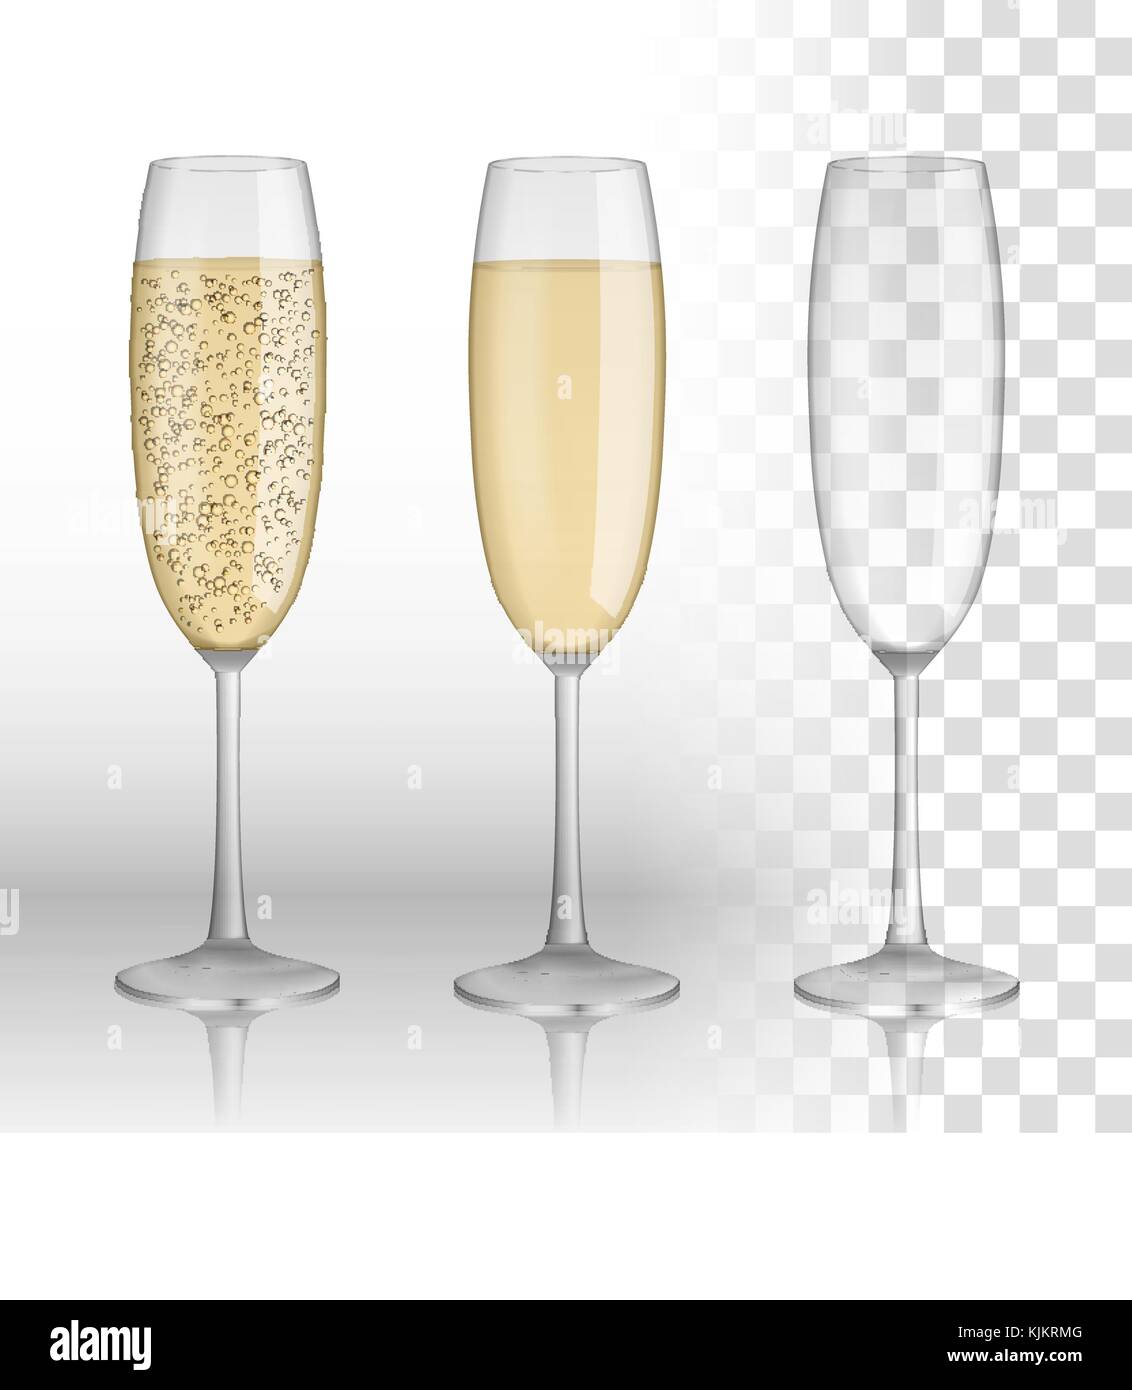 Volle und leere Glas Champagner und Wein auf einem transparenten Hintergrund isoliert. Vektor Glas. Urlaub Frohe Weihnachten und guten Rutsch ins neue Jahr feier Konzept. Vector Illustration Stock Vektor